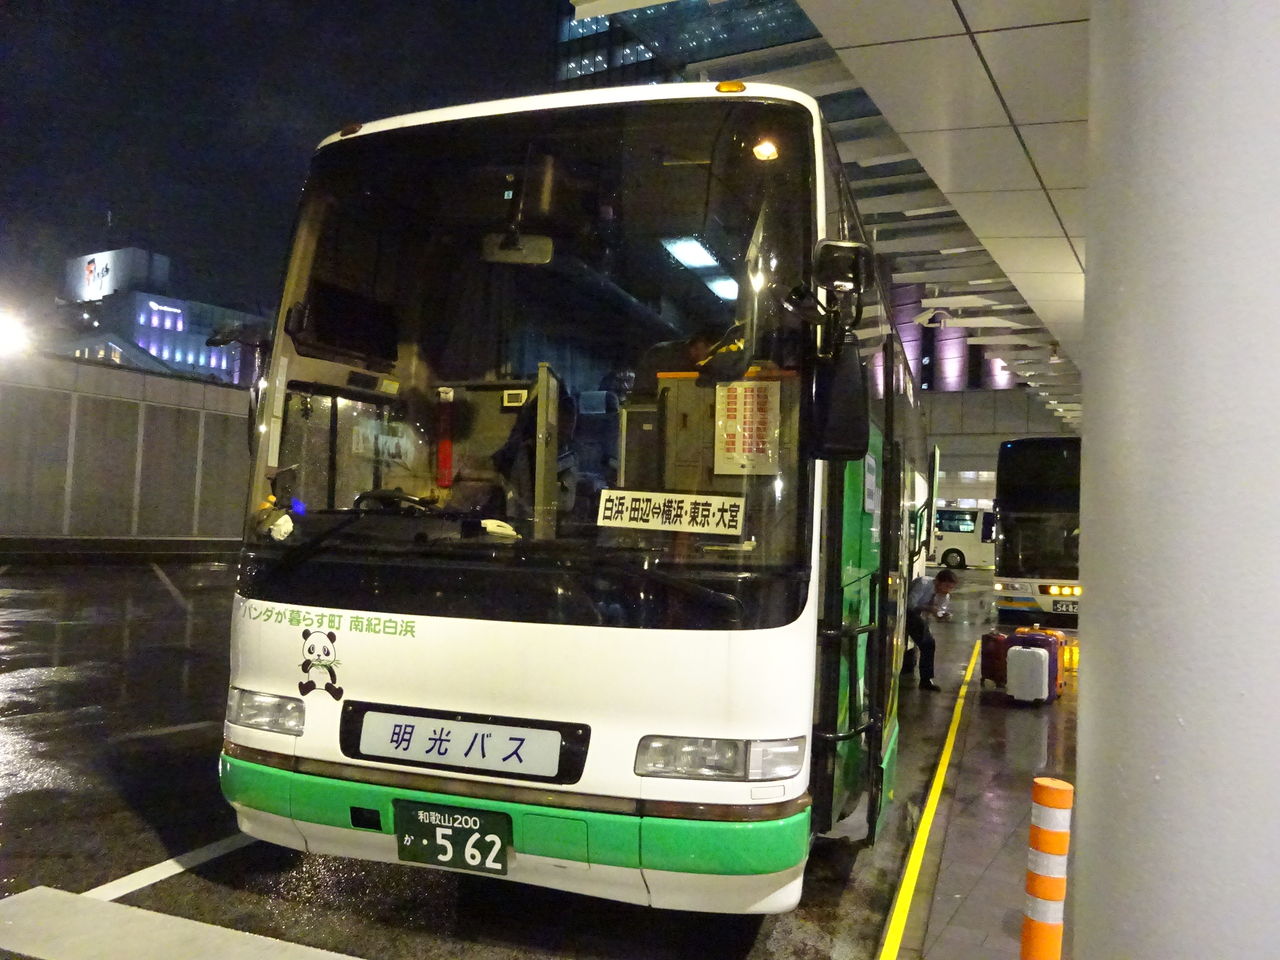 弘南バス パンダ号 17 3 乗り物旅行記録